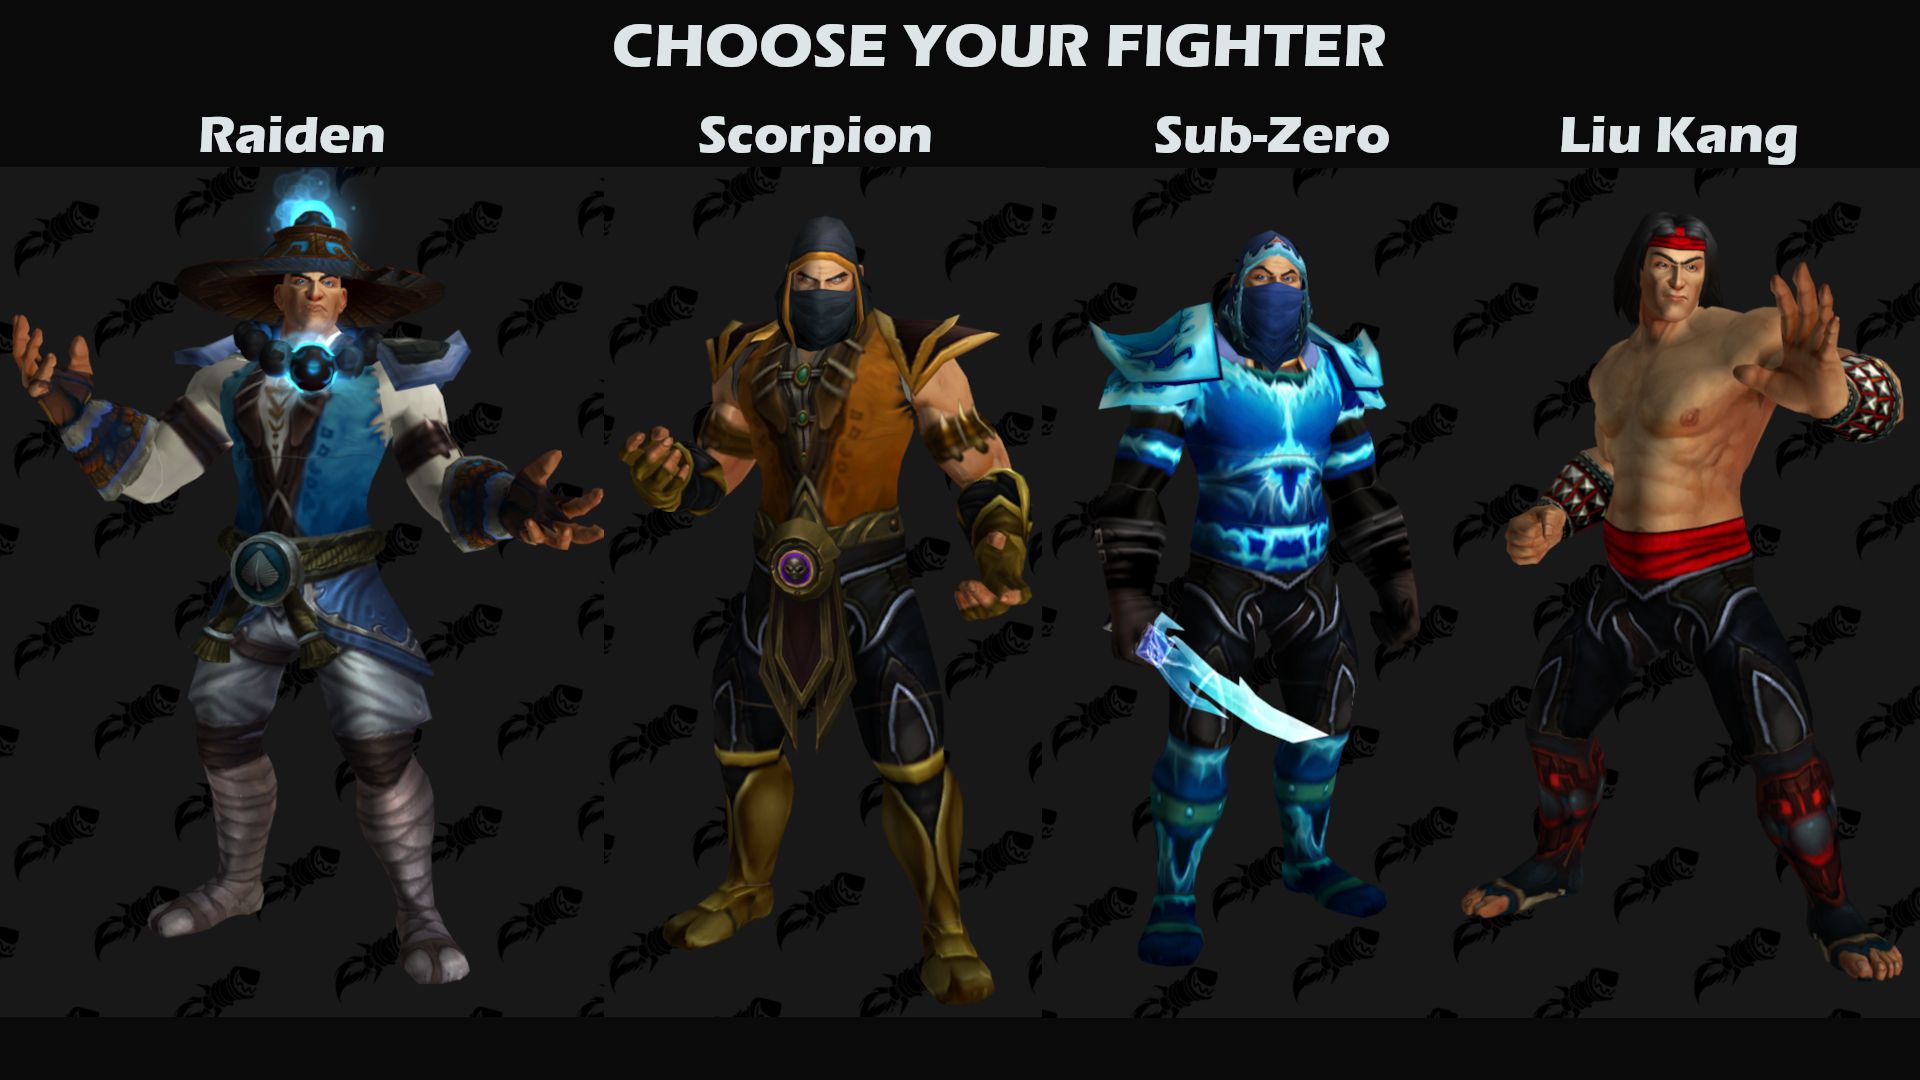 Трансмогрификация героев WoW в стиле Mortal Kombat. Источник: reddit. Автор: Timbodo